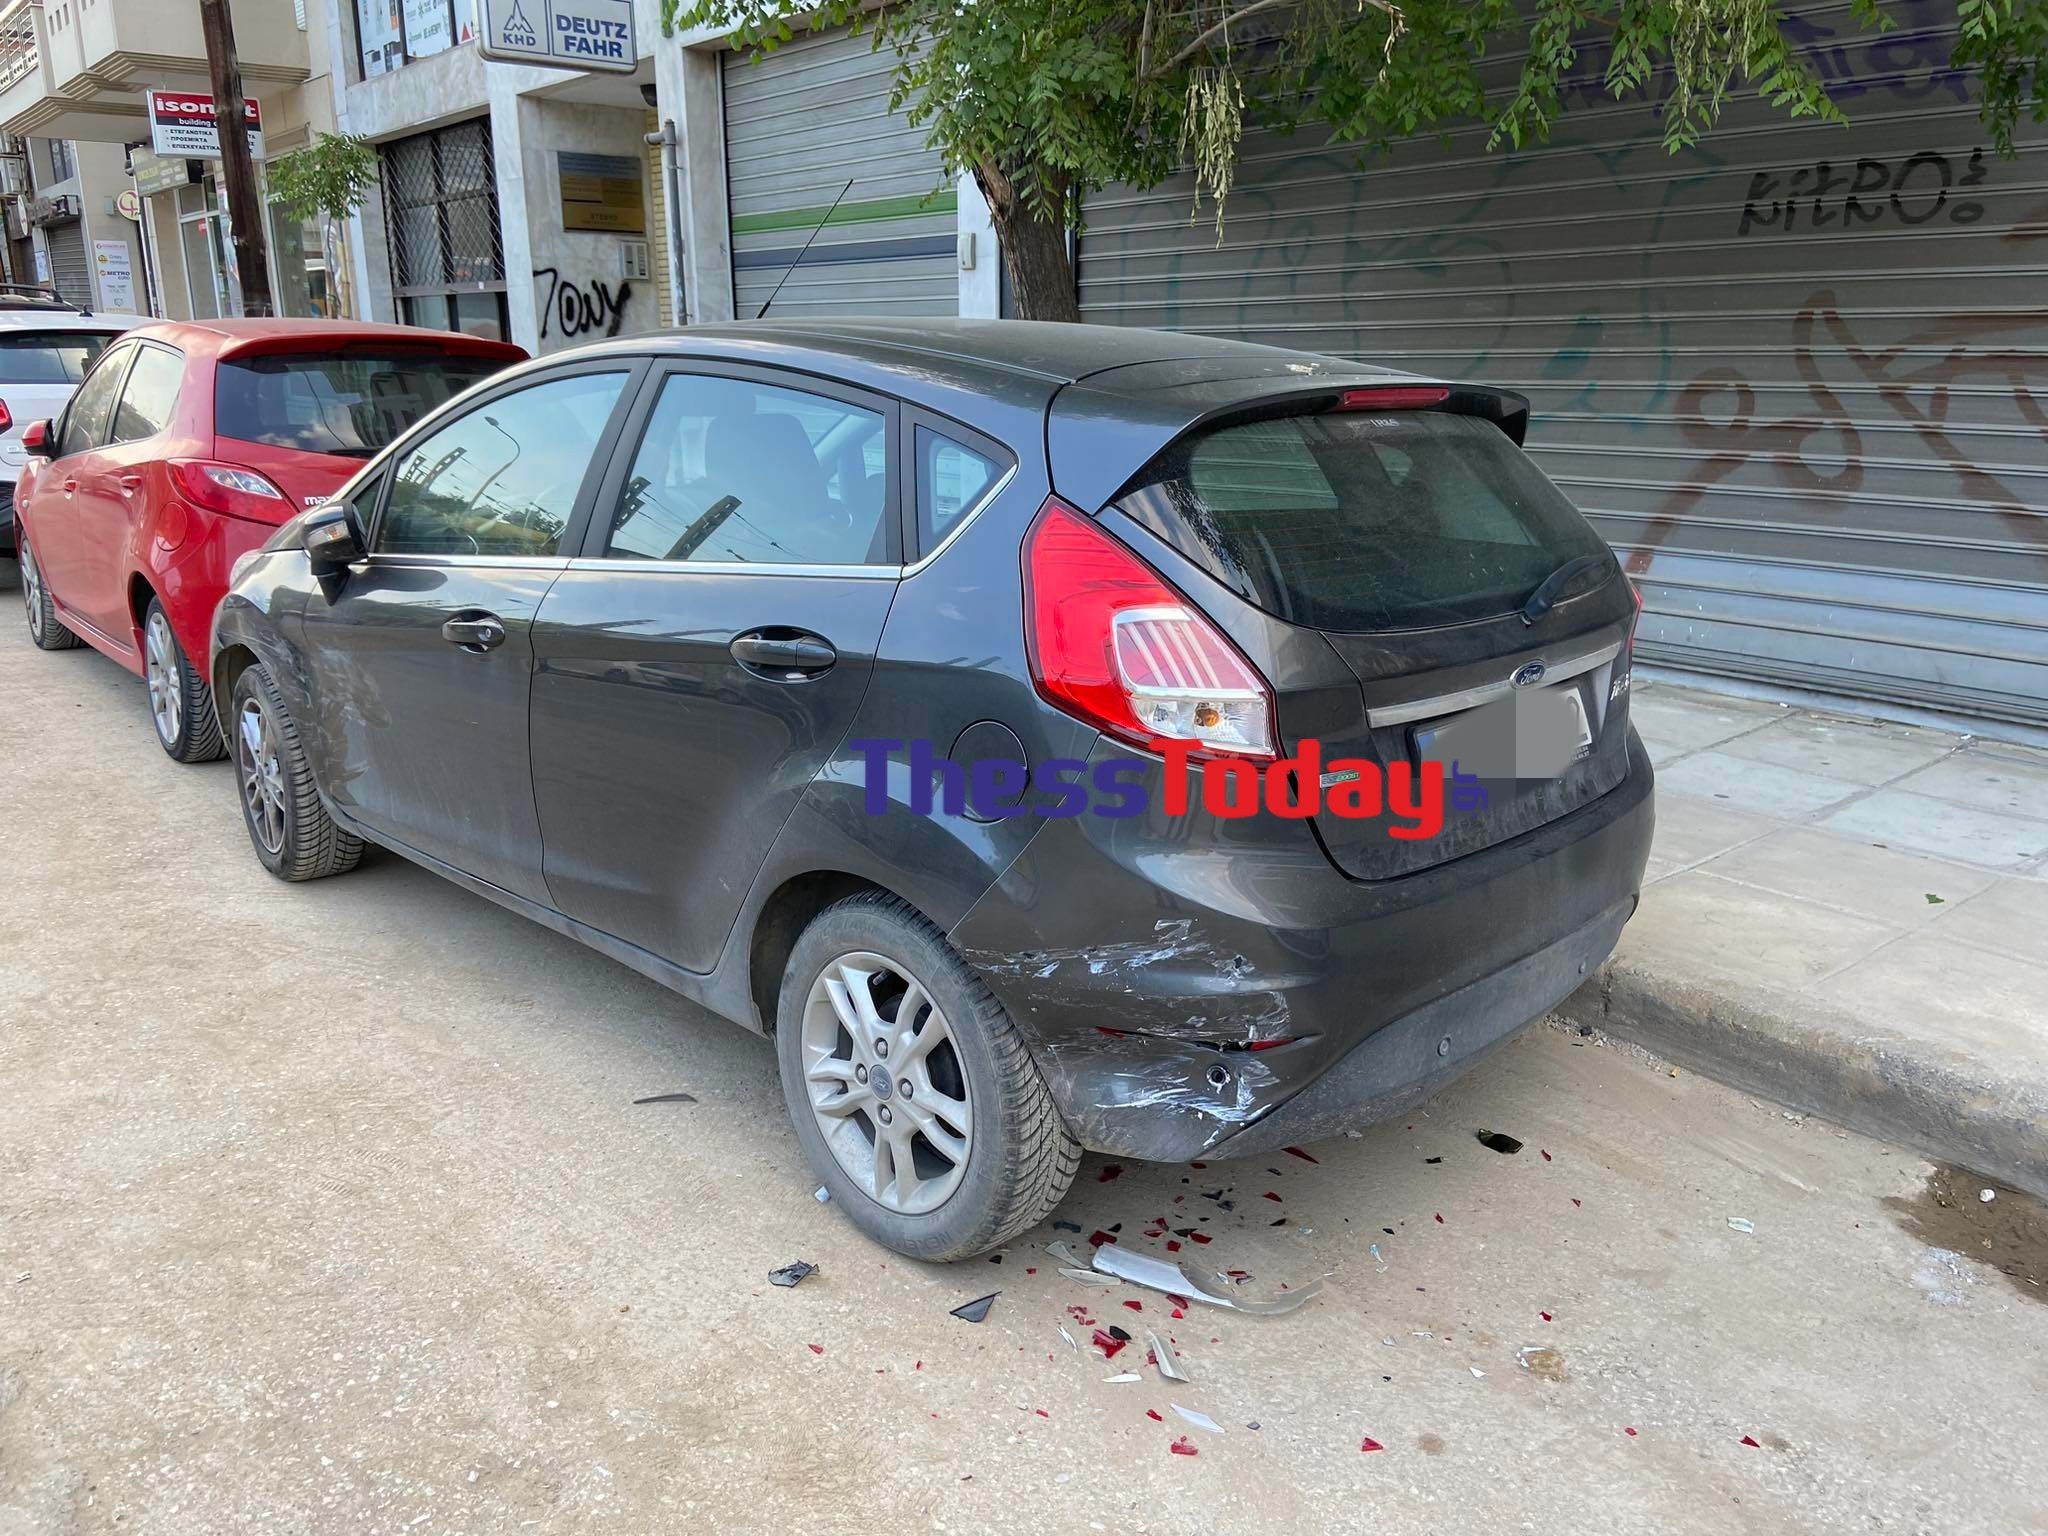 Θεσσαλονίκη: Επεισοδιακή καταδίωξη - Εμβόλισε περιπολικό και «καρφώθηκε» σε σταθμευμένο αυτοκίνητο